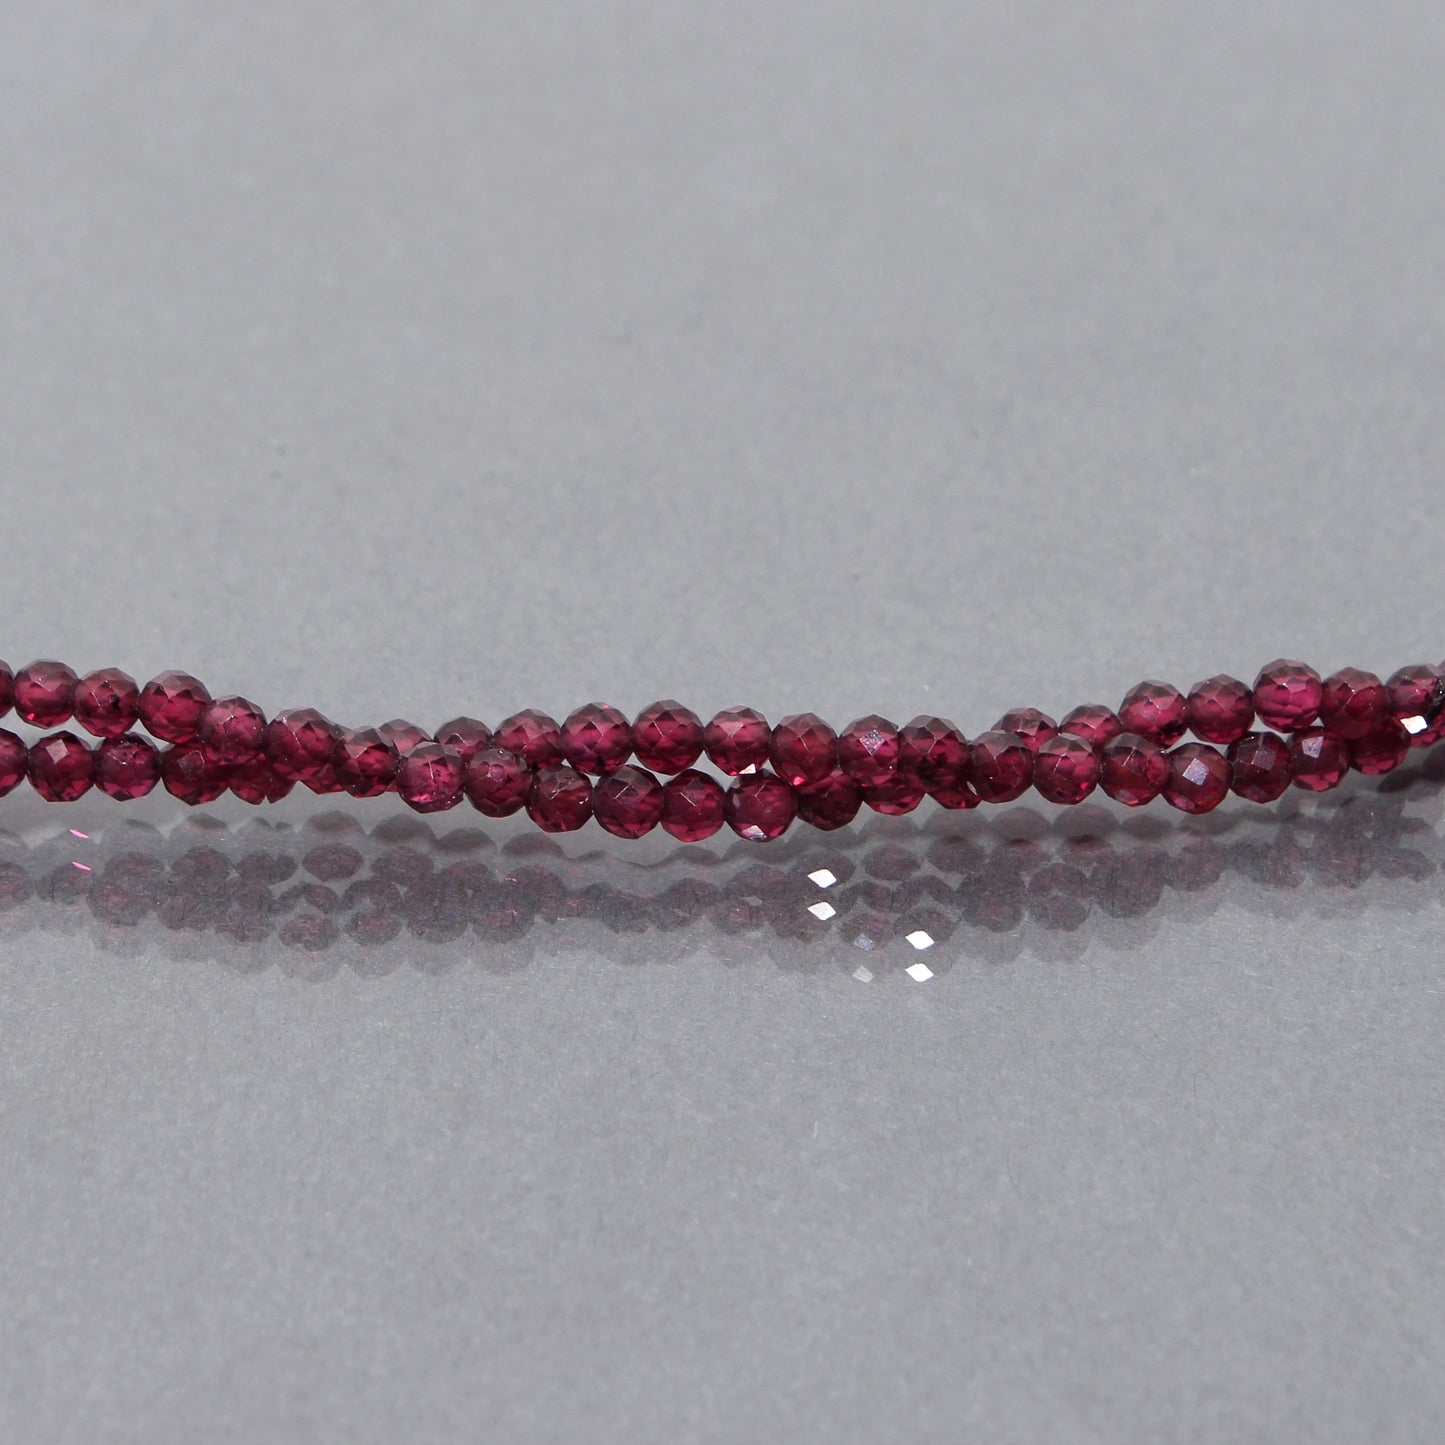  Rhodolite Garnet faceted beads necklace